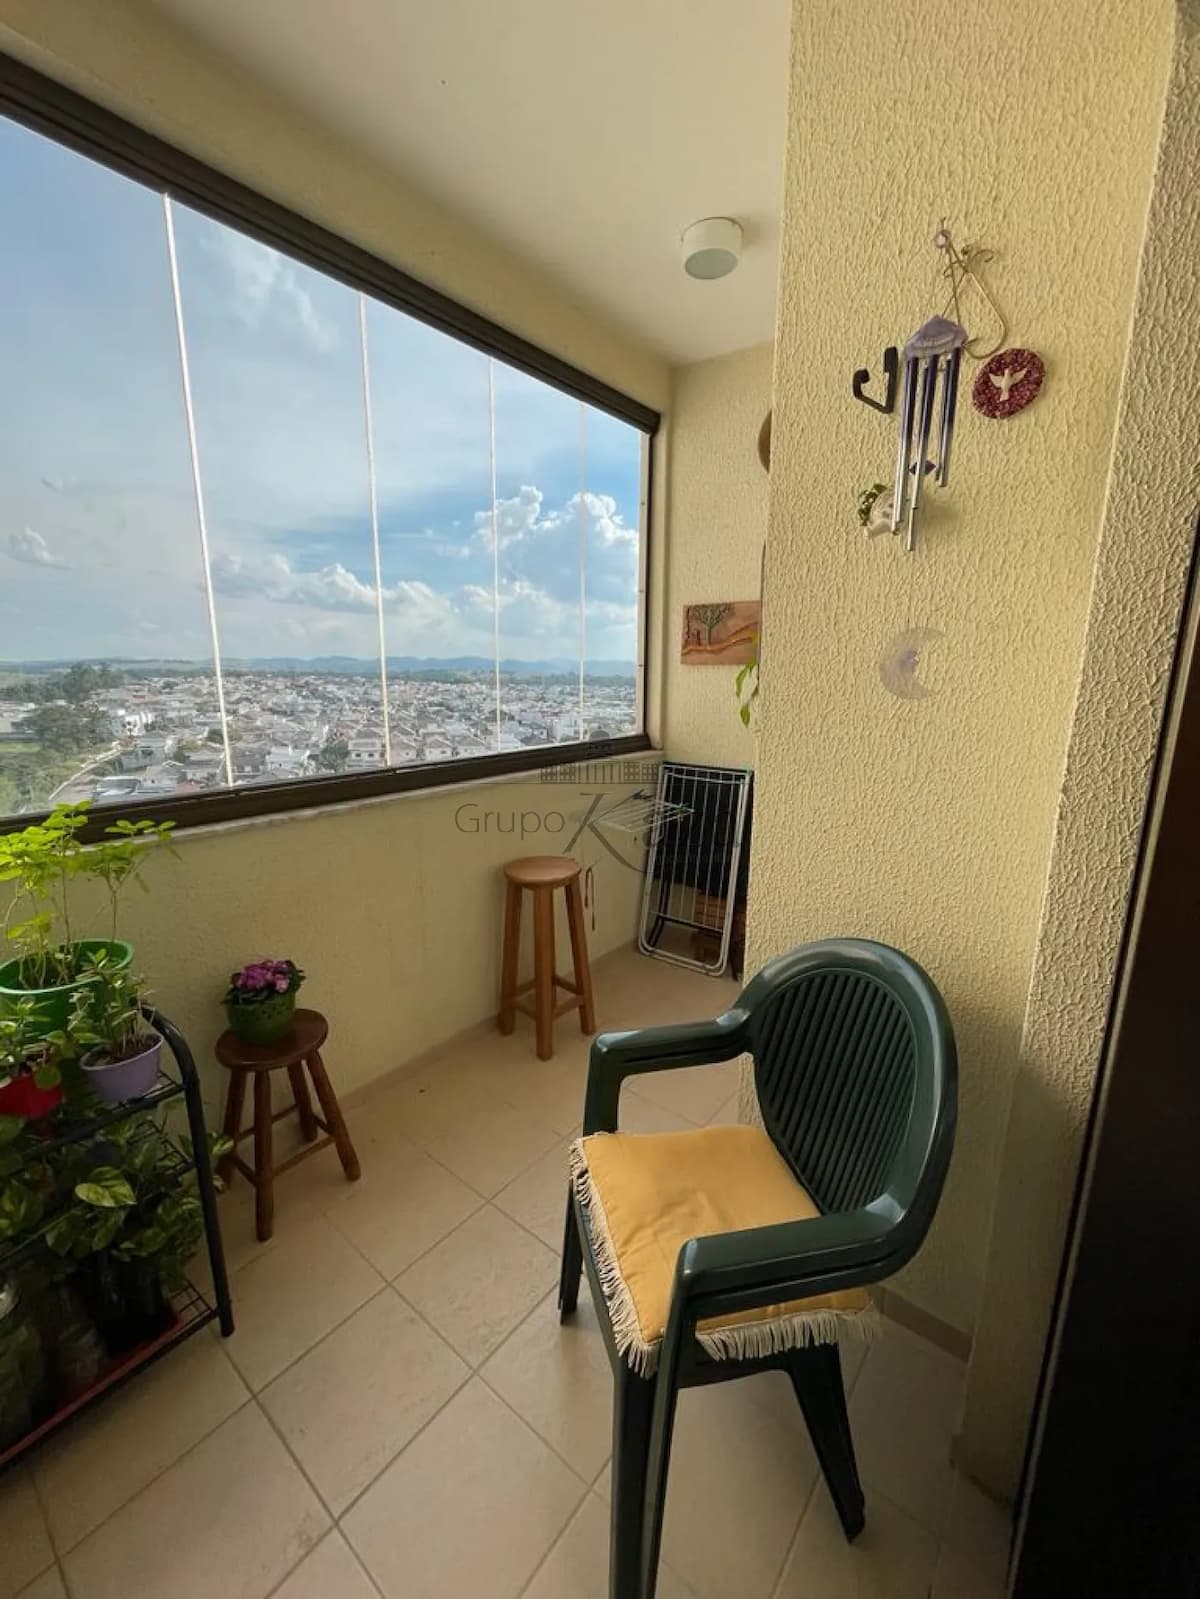 Foto 4 de Apartamento Padrão em Urbanova, São José dos Campos - imagem 4